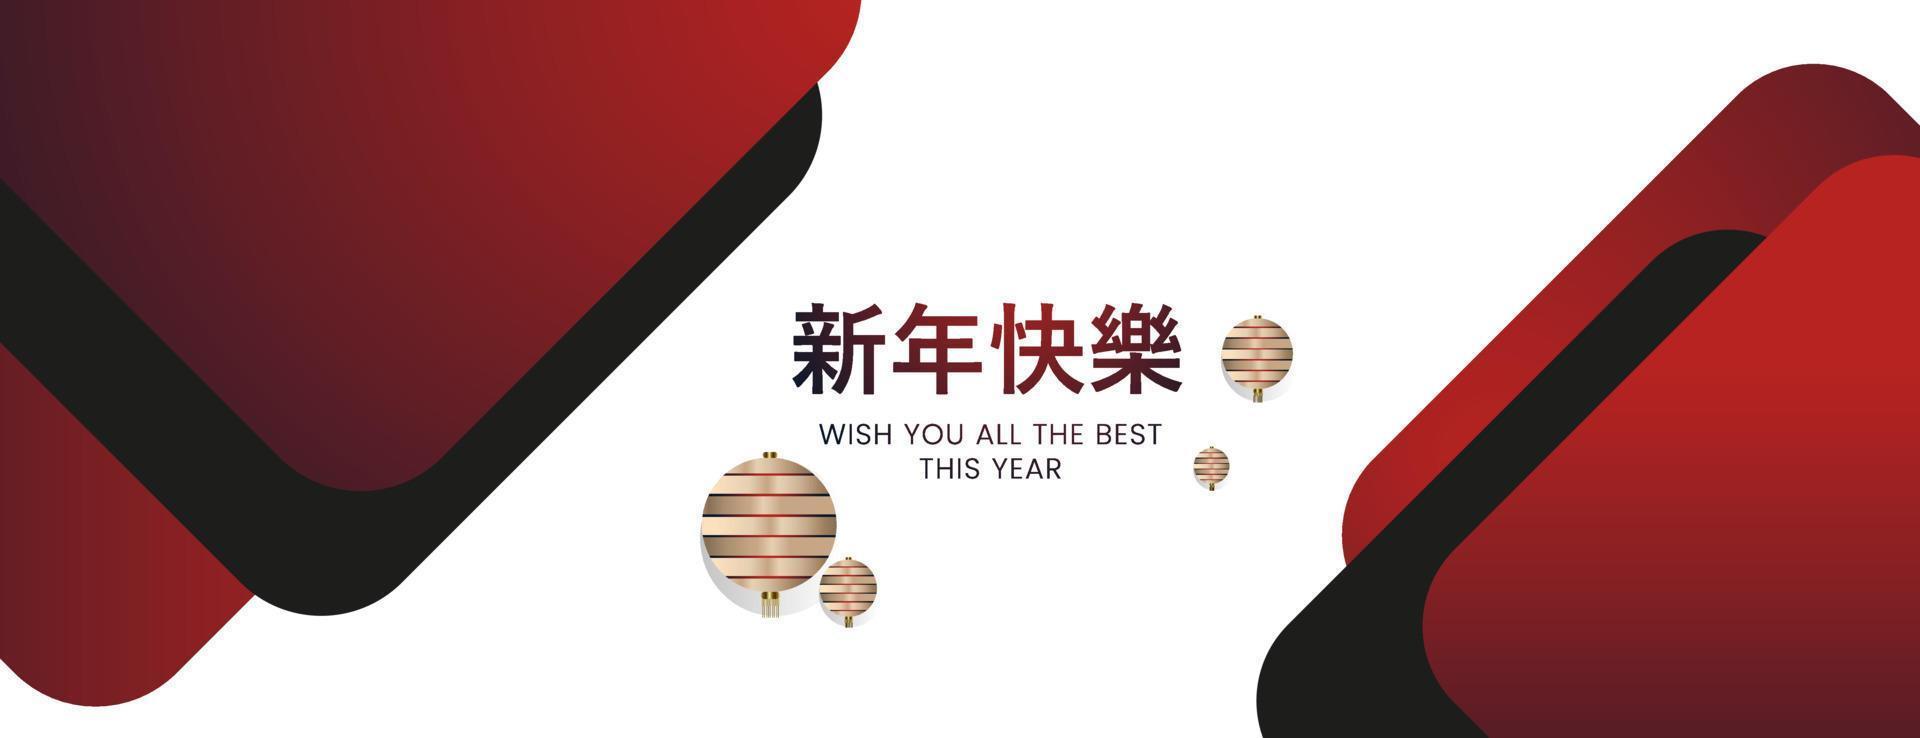 modelos de banners de cor gradiente preto e vermelho com estilo de conceitos de ano novo chinês, design de banner de ano novo chinês. vetor